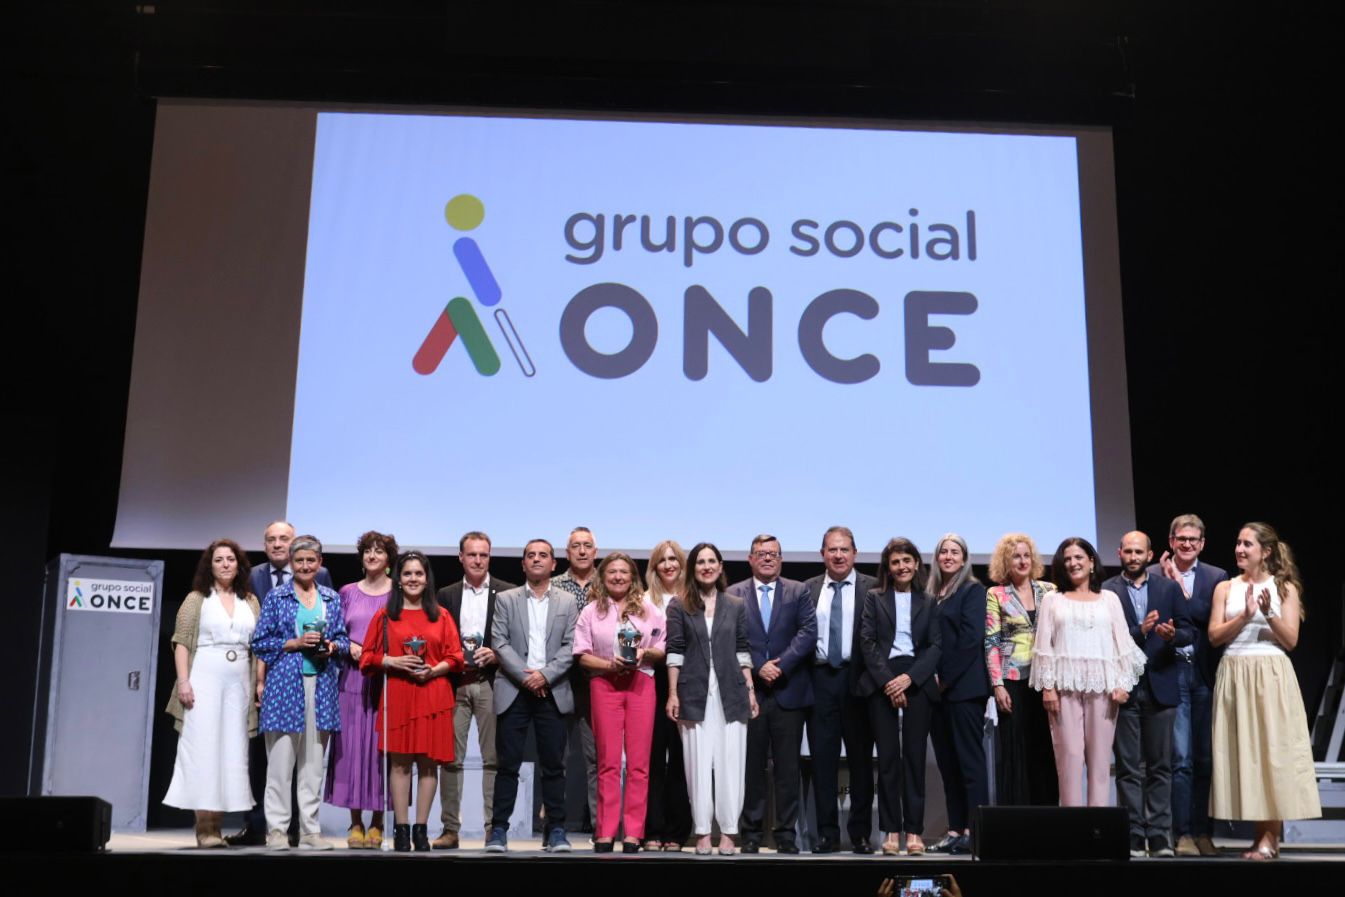 Foto de familia sobre el escenario y ante una pantalla con el logo del Grupo Social ONCE detrás